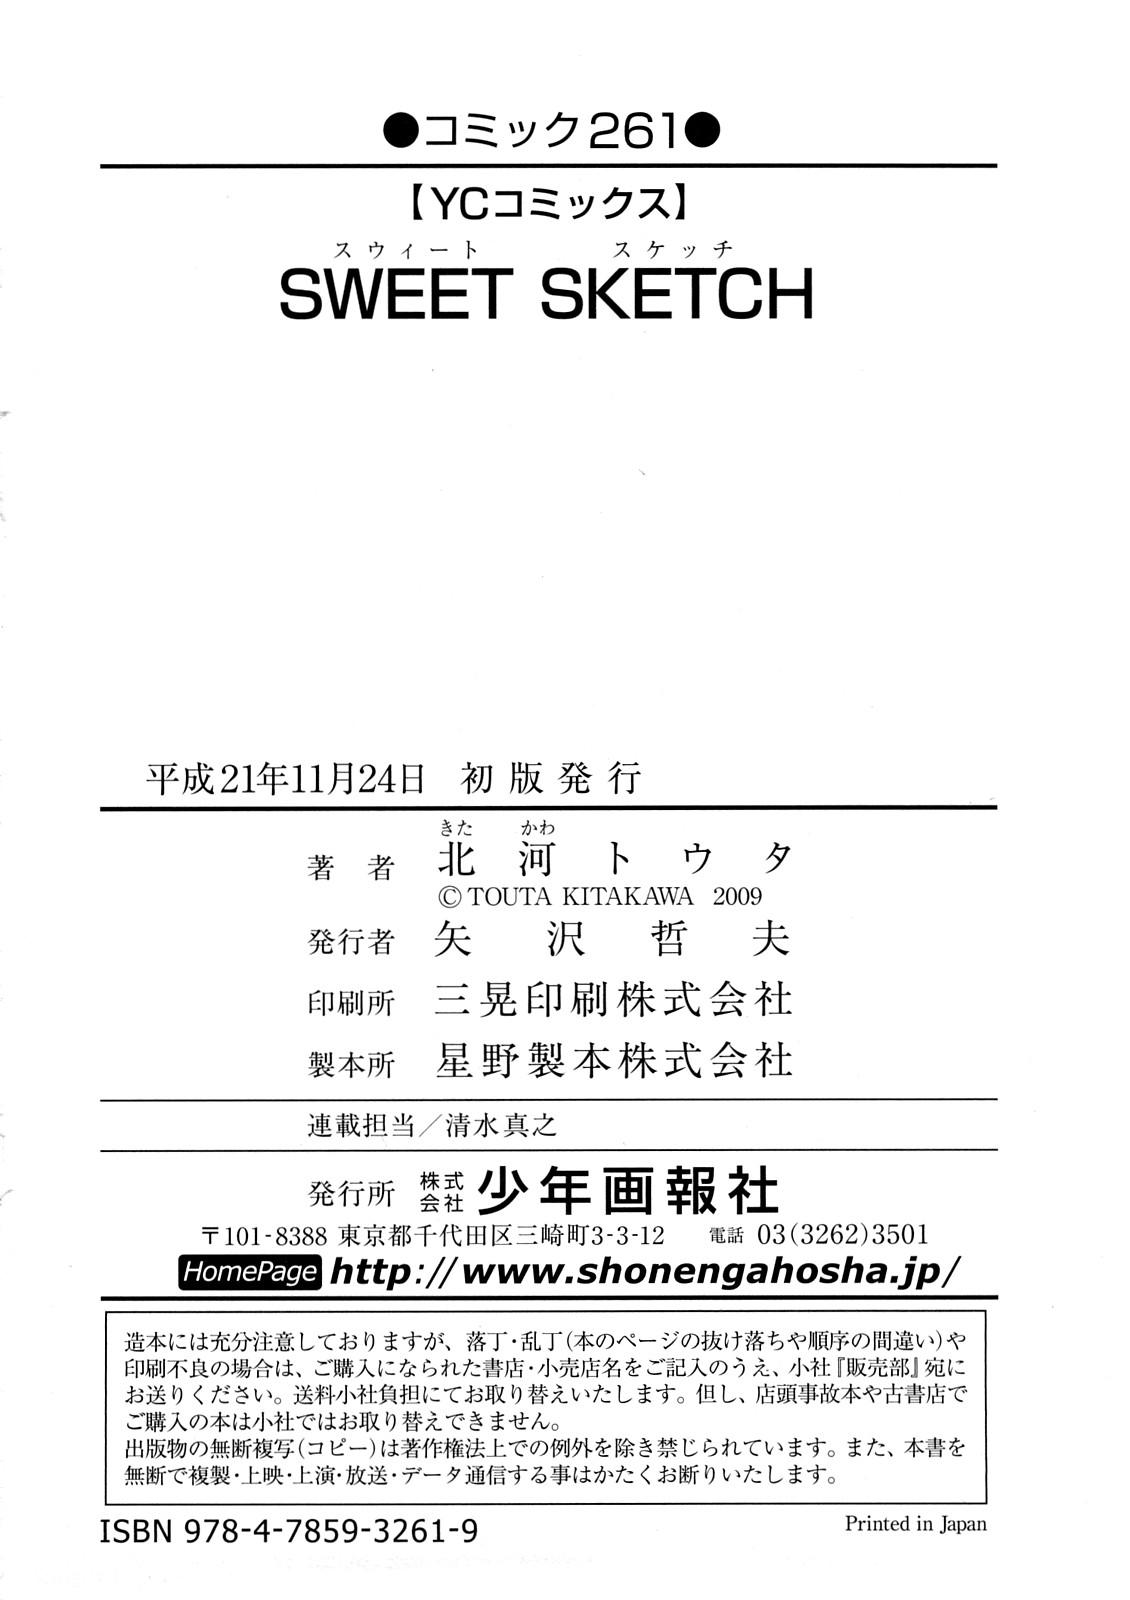 Sweet Sketch 130